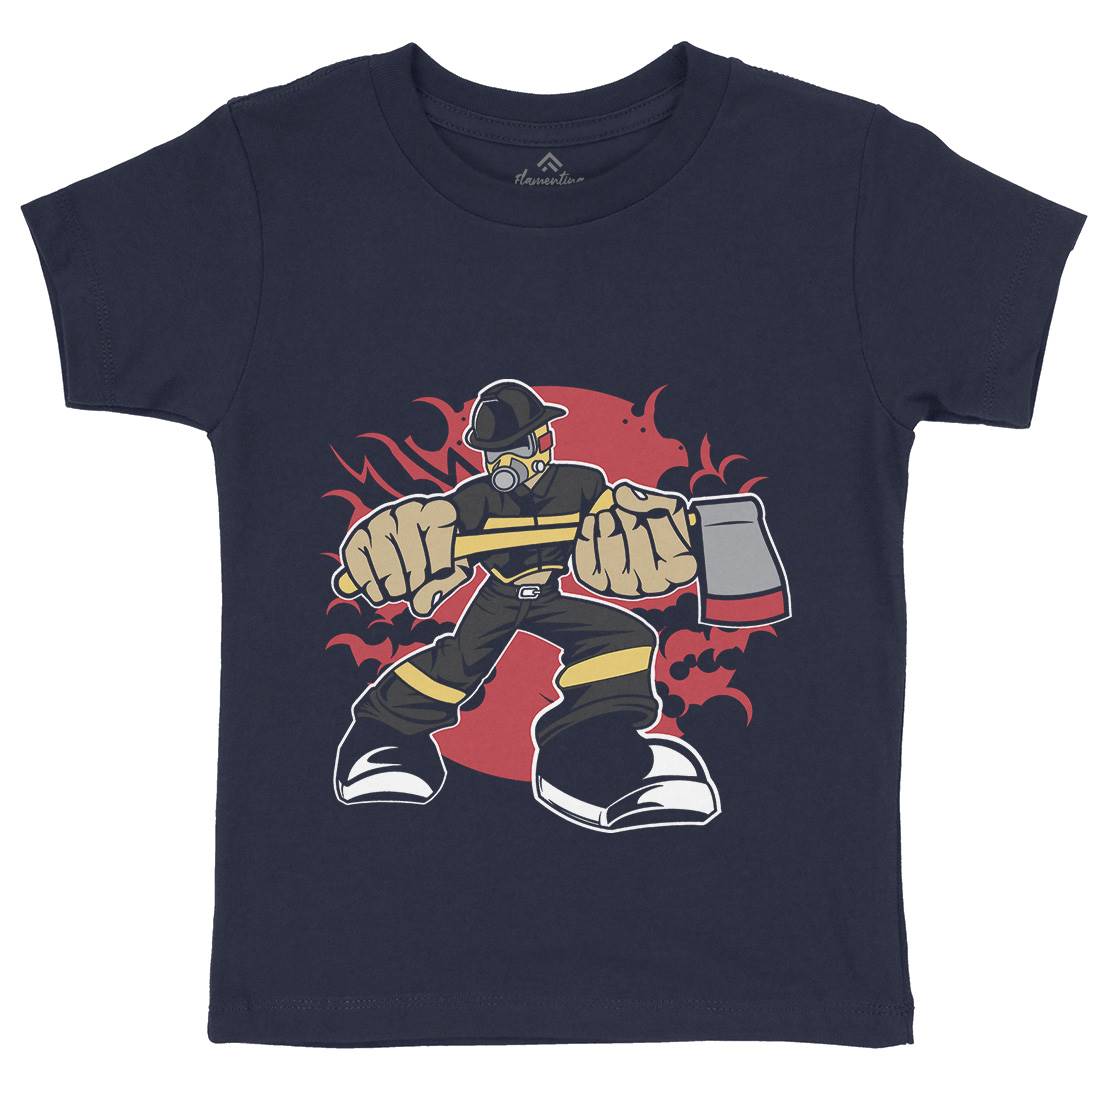 Fireman Kids Crew Neck T-Shirt Firefighters C359